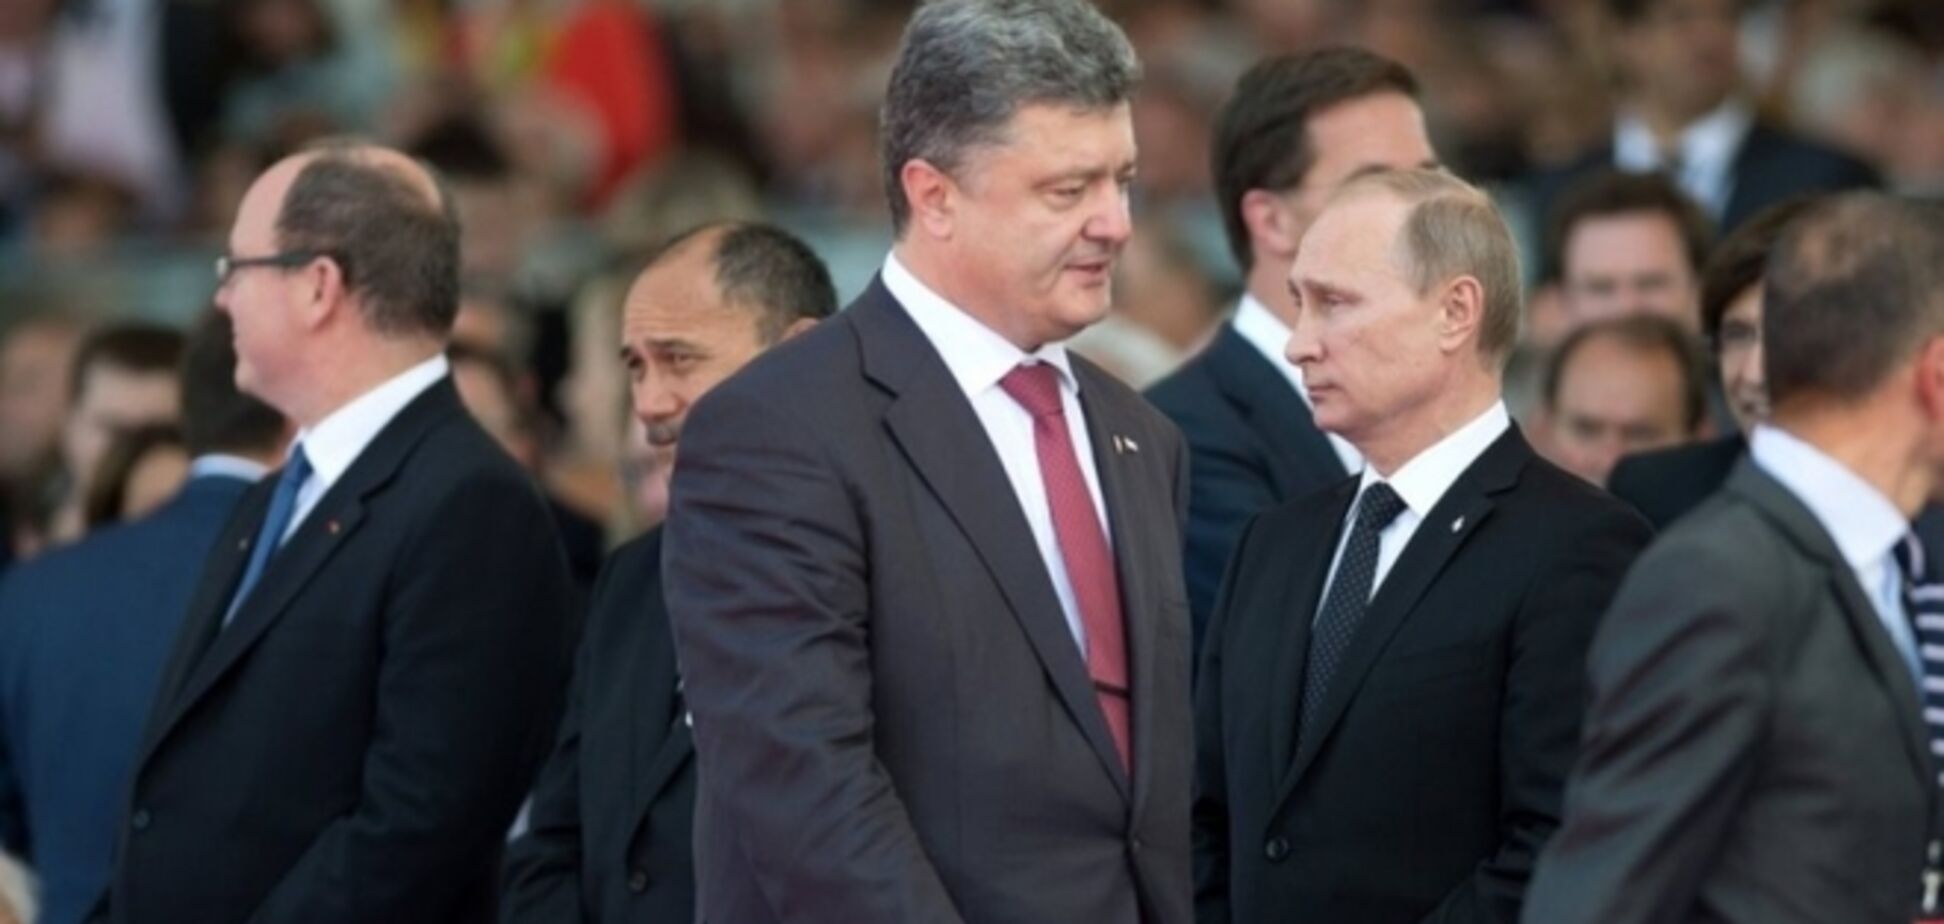 Саммит на пороге войны: может ли измениться Владимир Путин